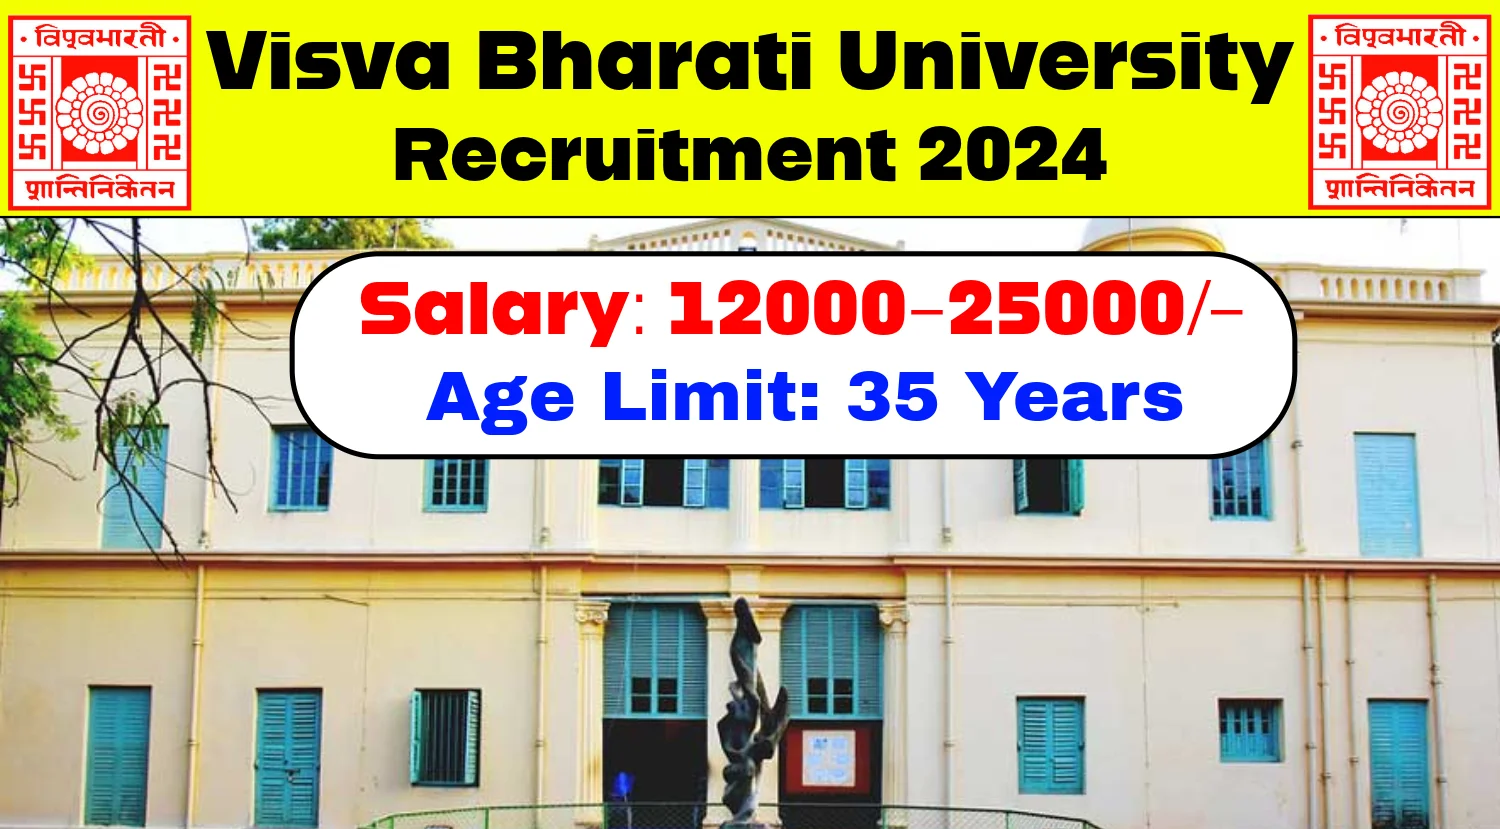 Visva Bharati University Recruitment 2024